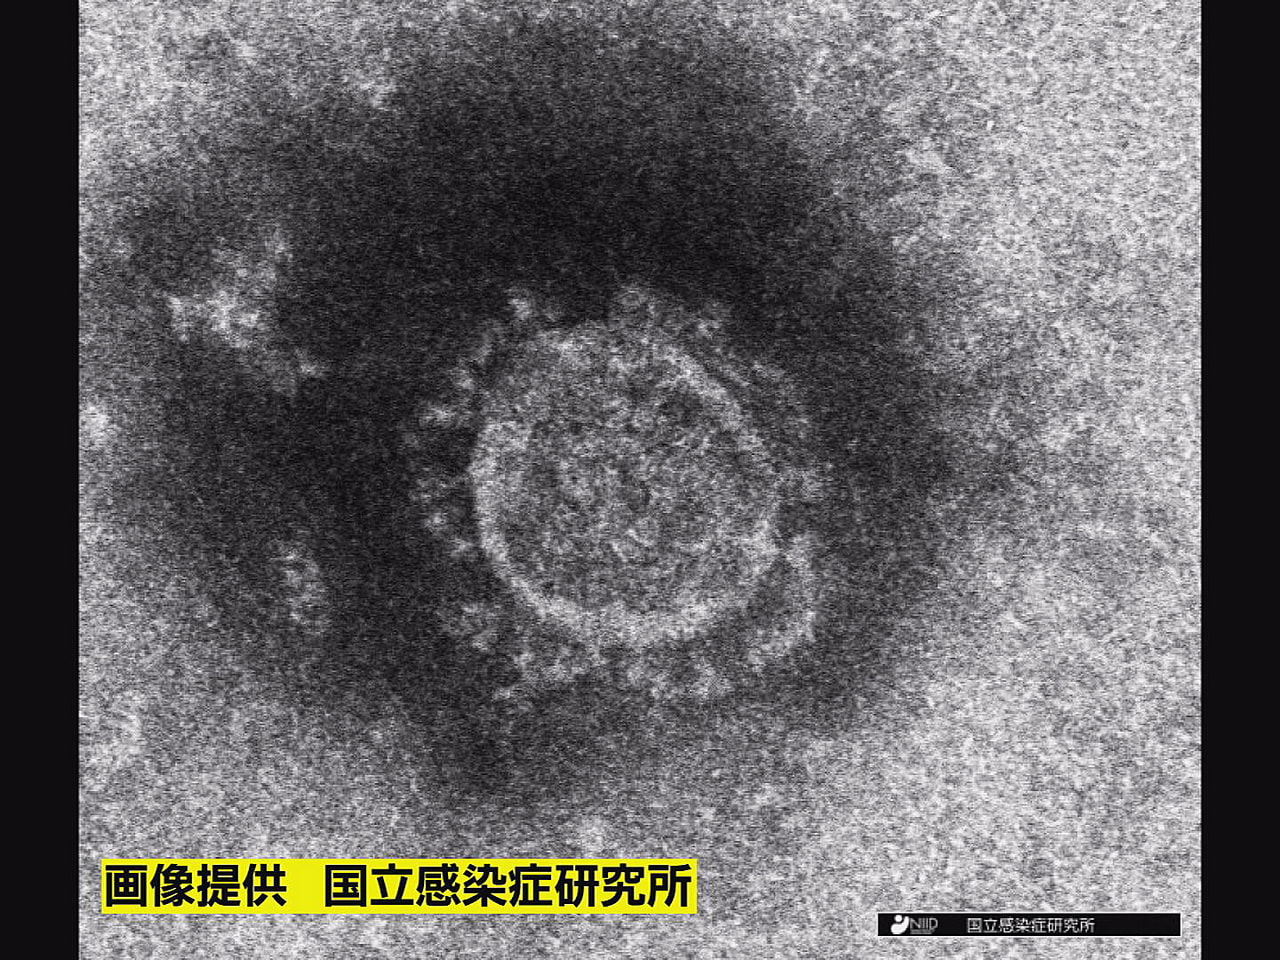 岐阜県は１２日、新型コロナウイルスの感染者が新たに１６５人確認されたと発表しまし...